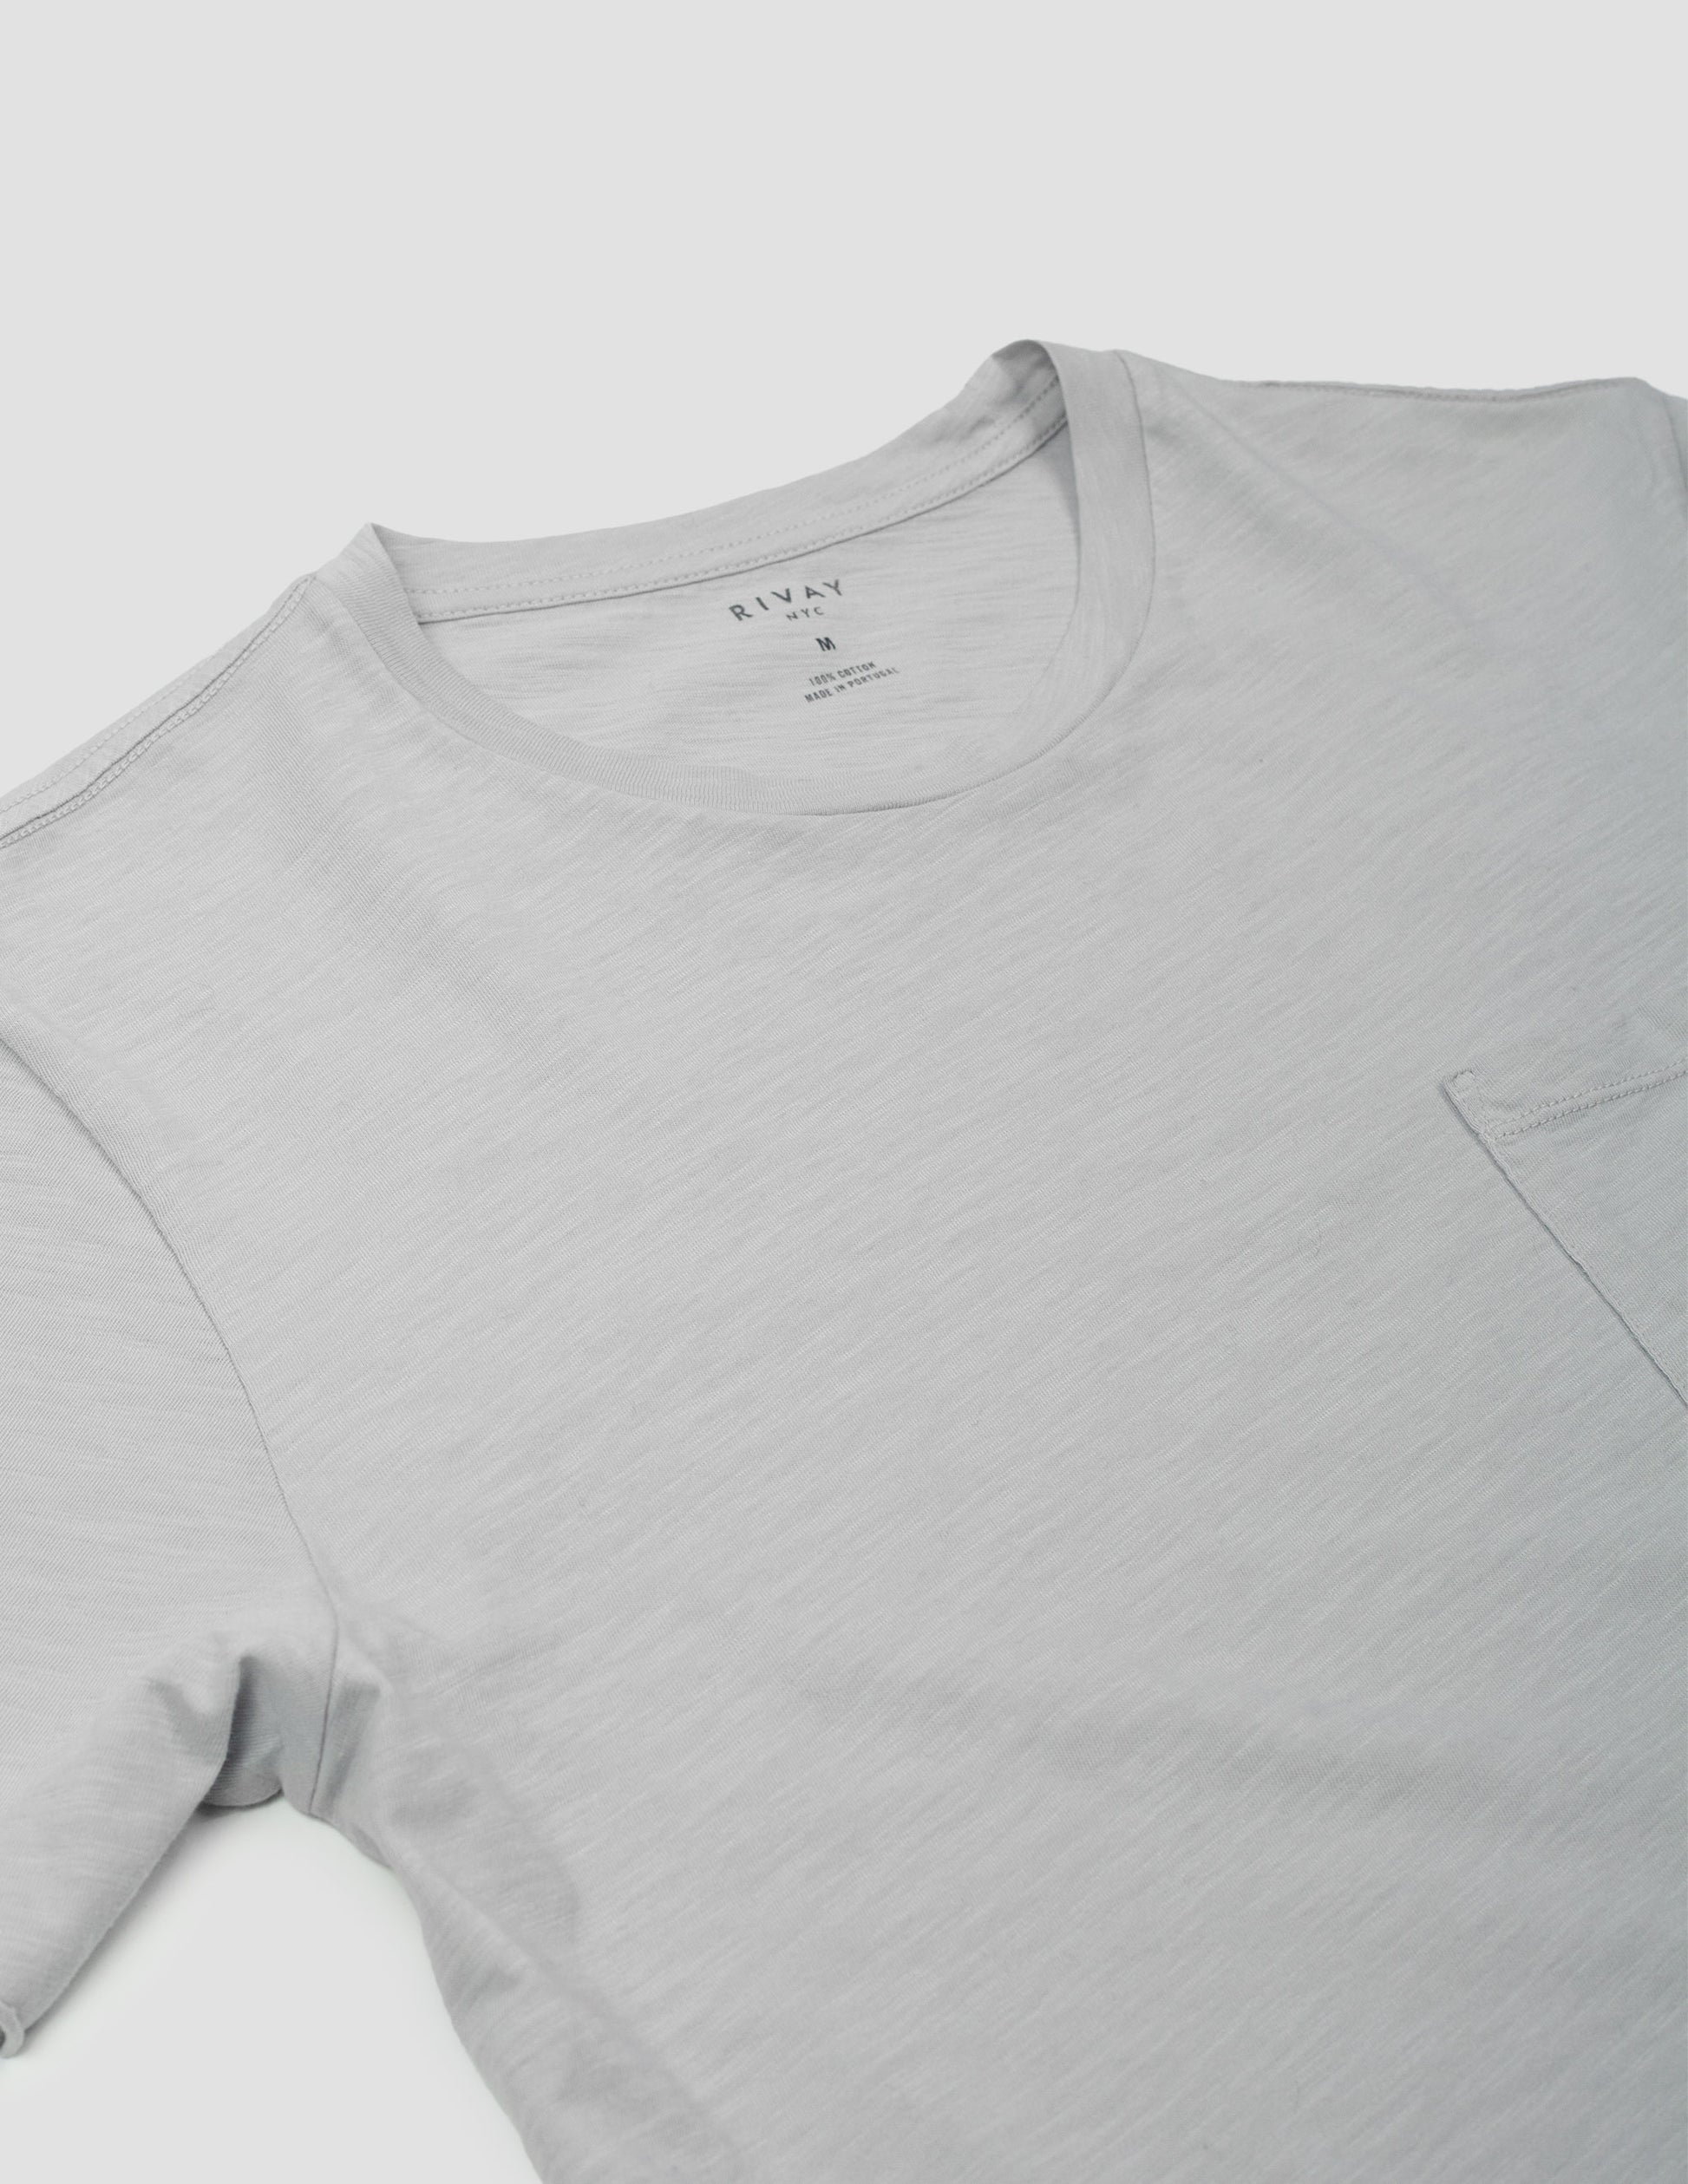 Rivay Men's Slub Cotton T-Shirt Pale Grey